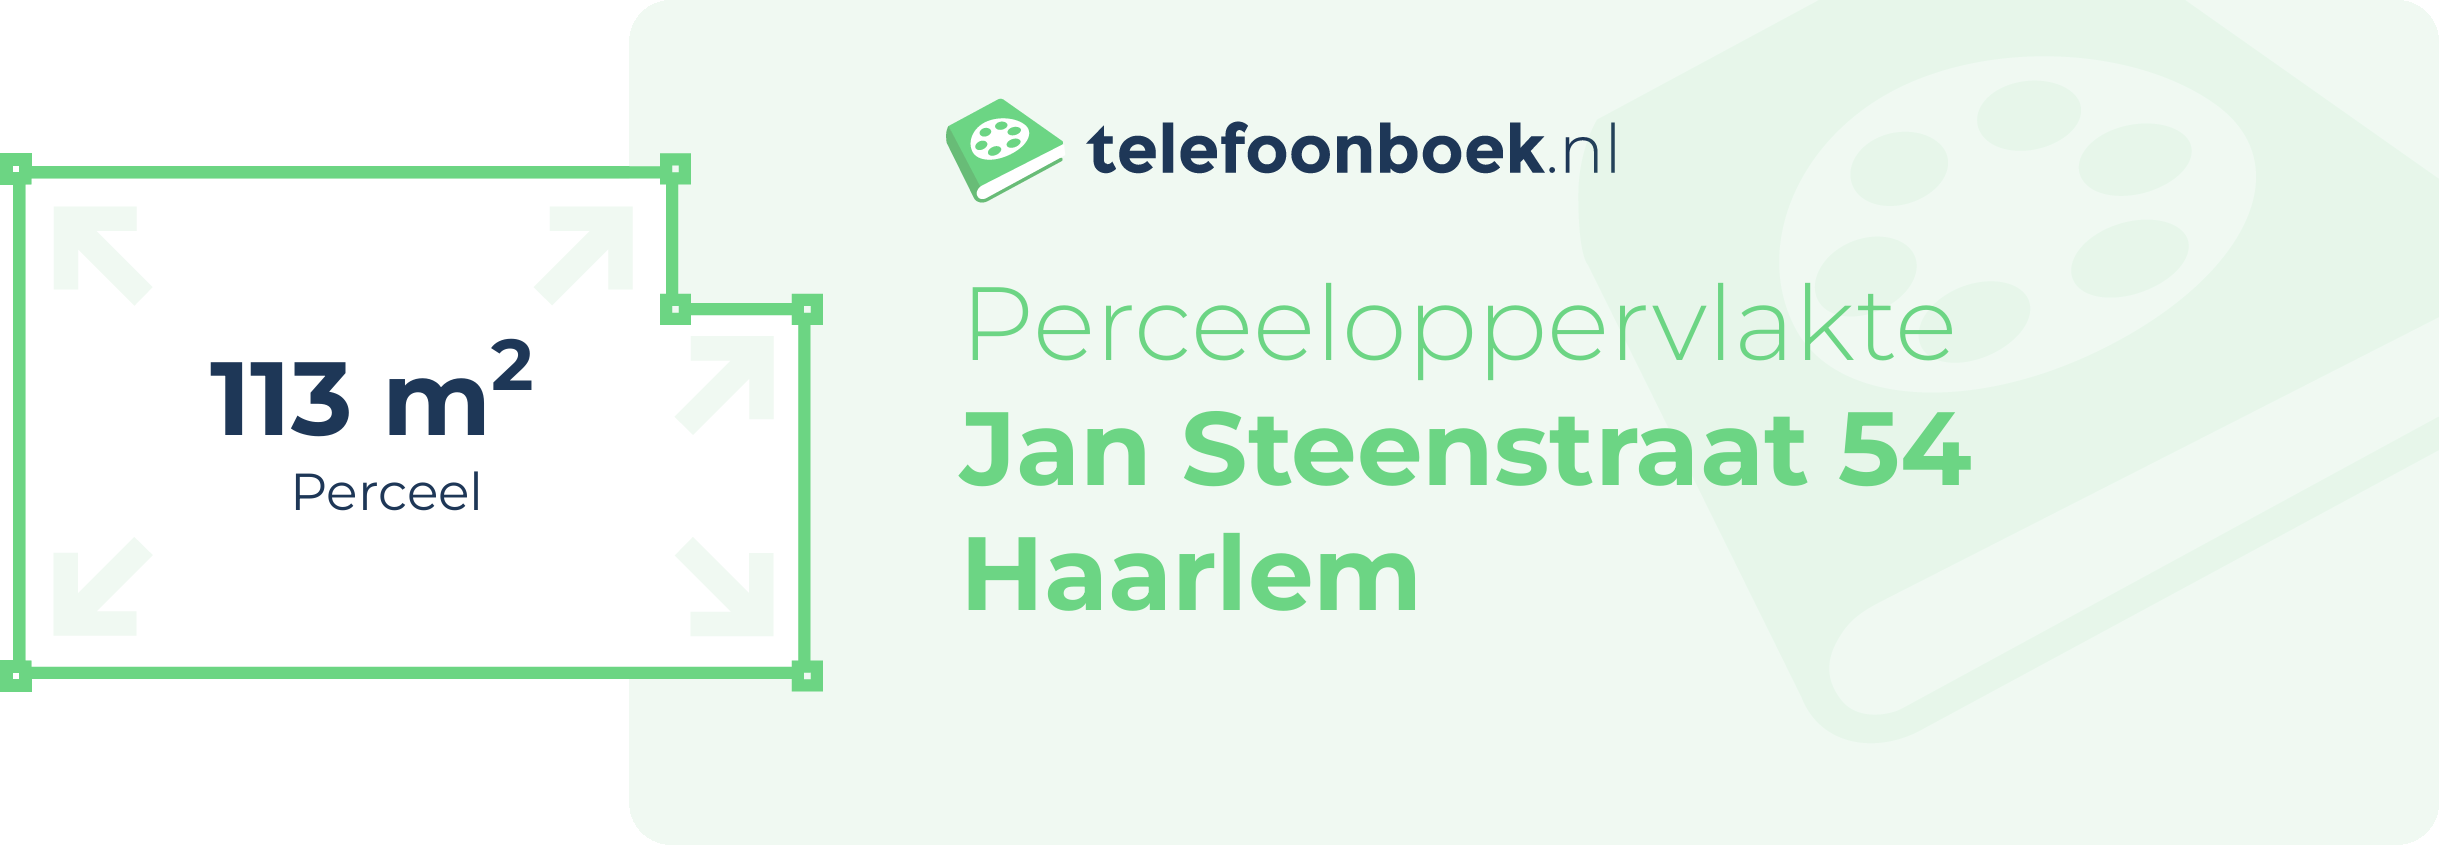 Perceeloppervlakte Jan Steenstraat 54 Haarlem